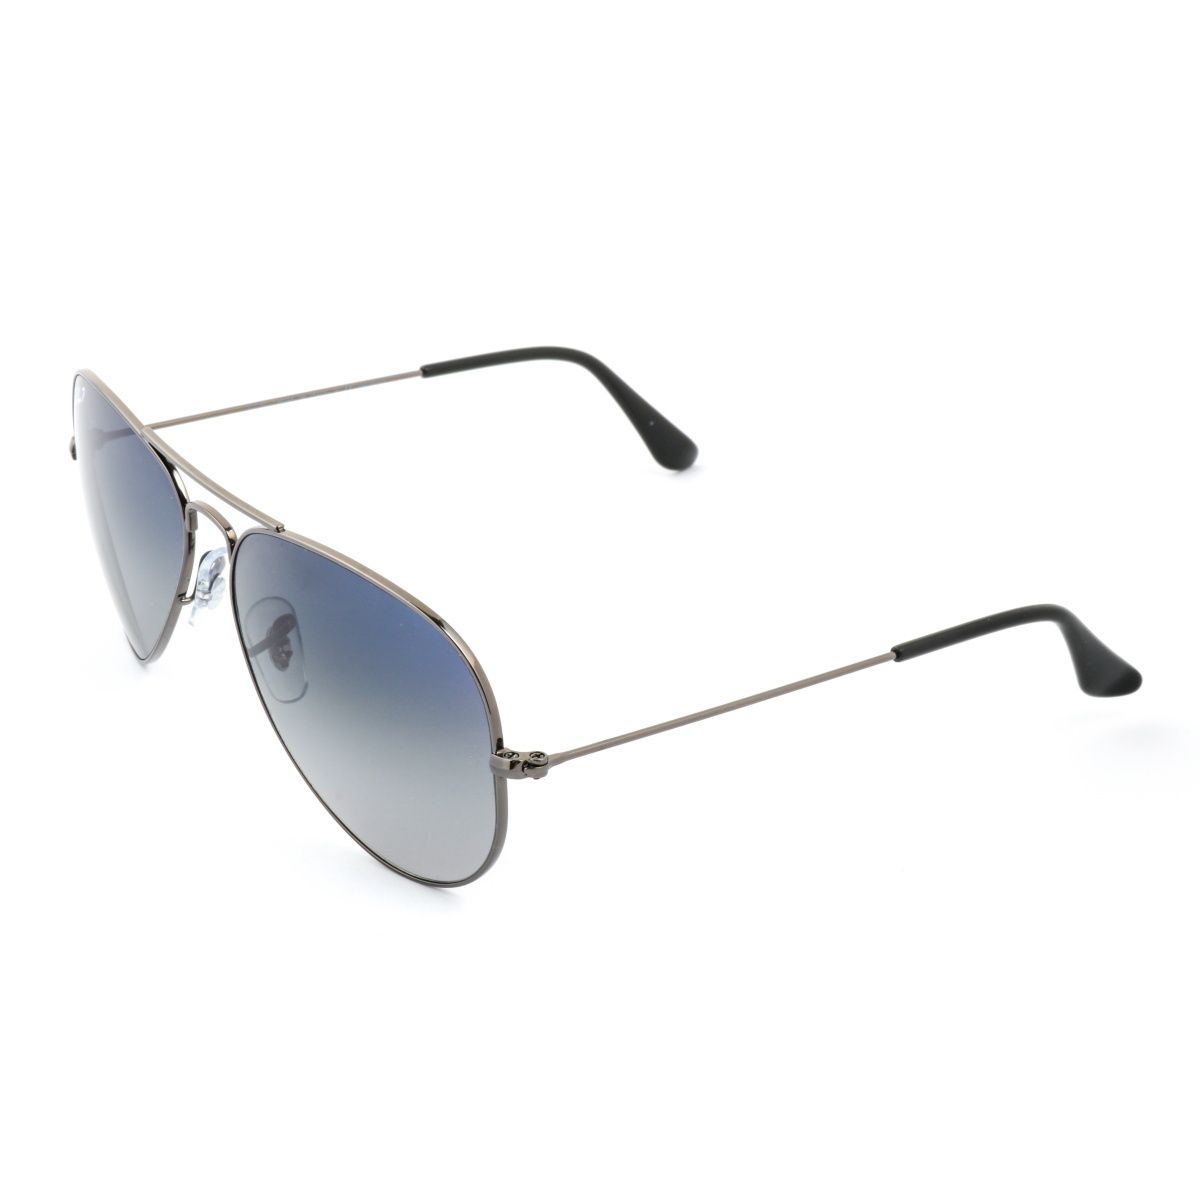 RB3025 Pilot Sunglasses 004 78 - size 58